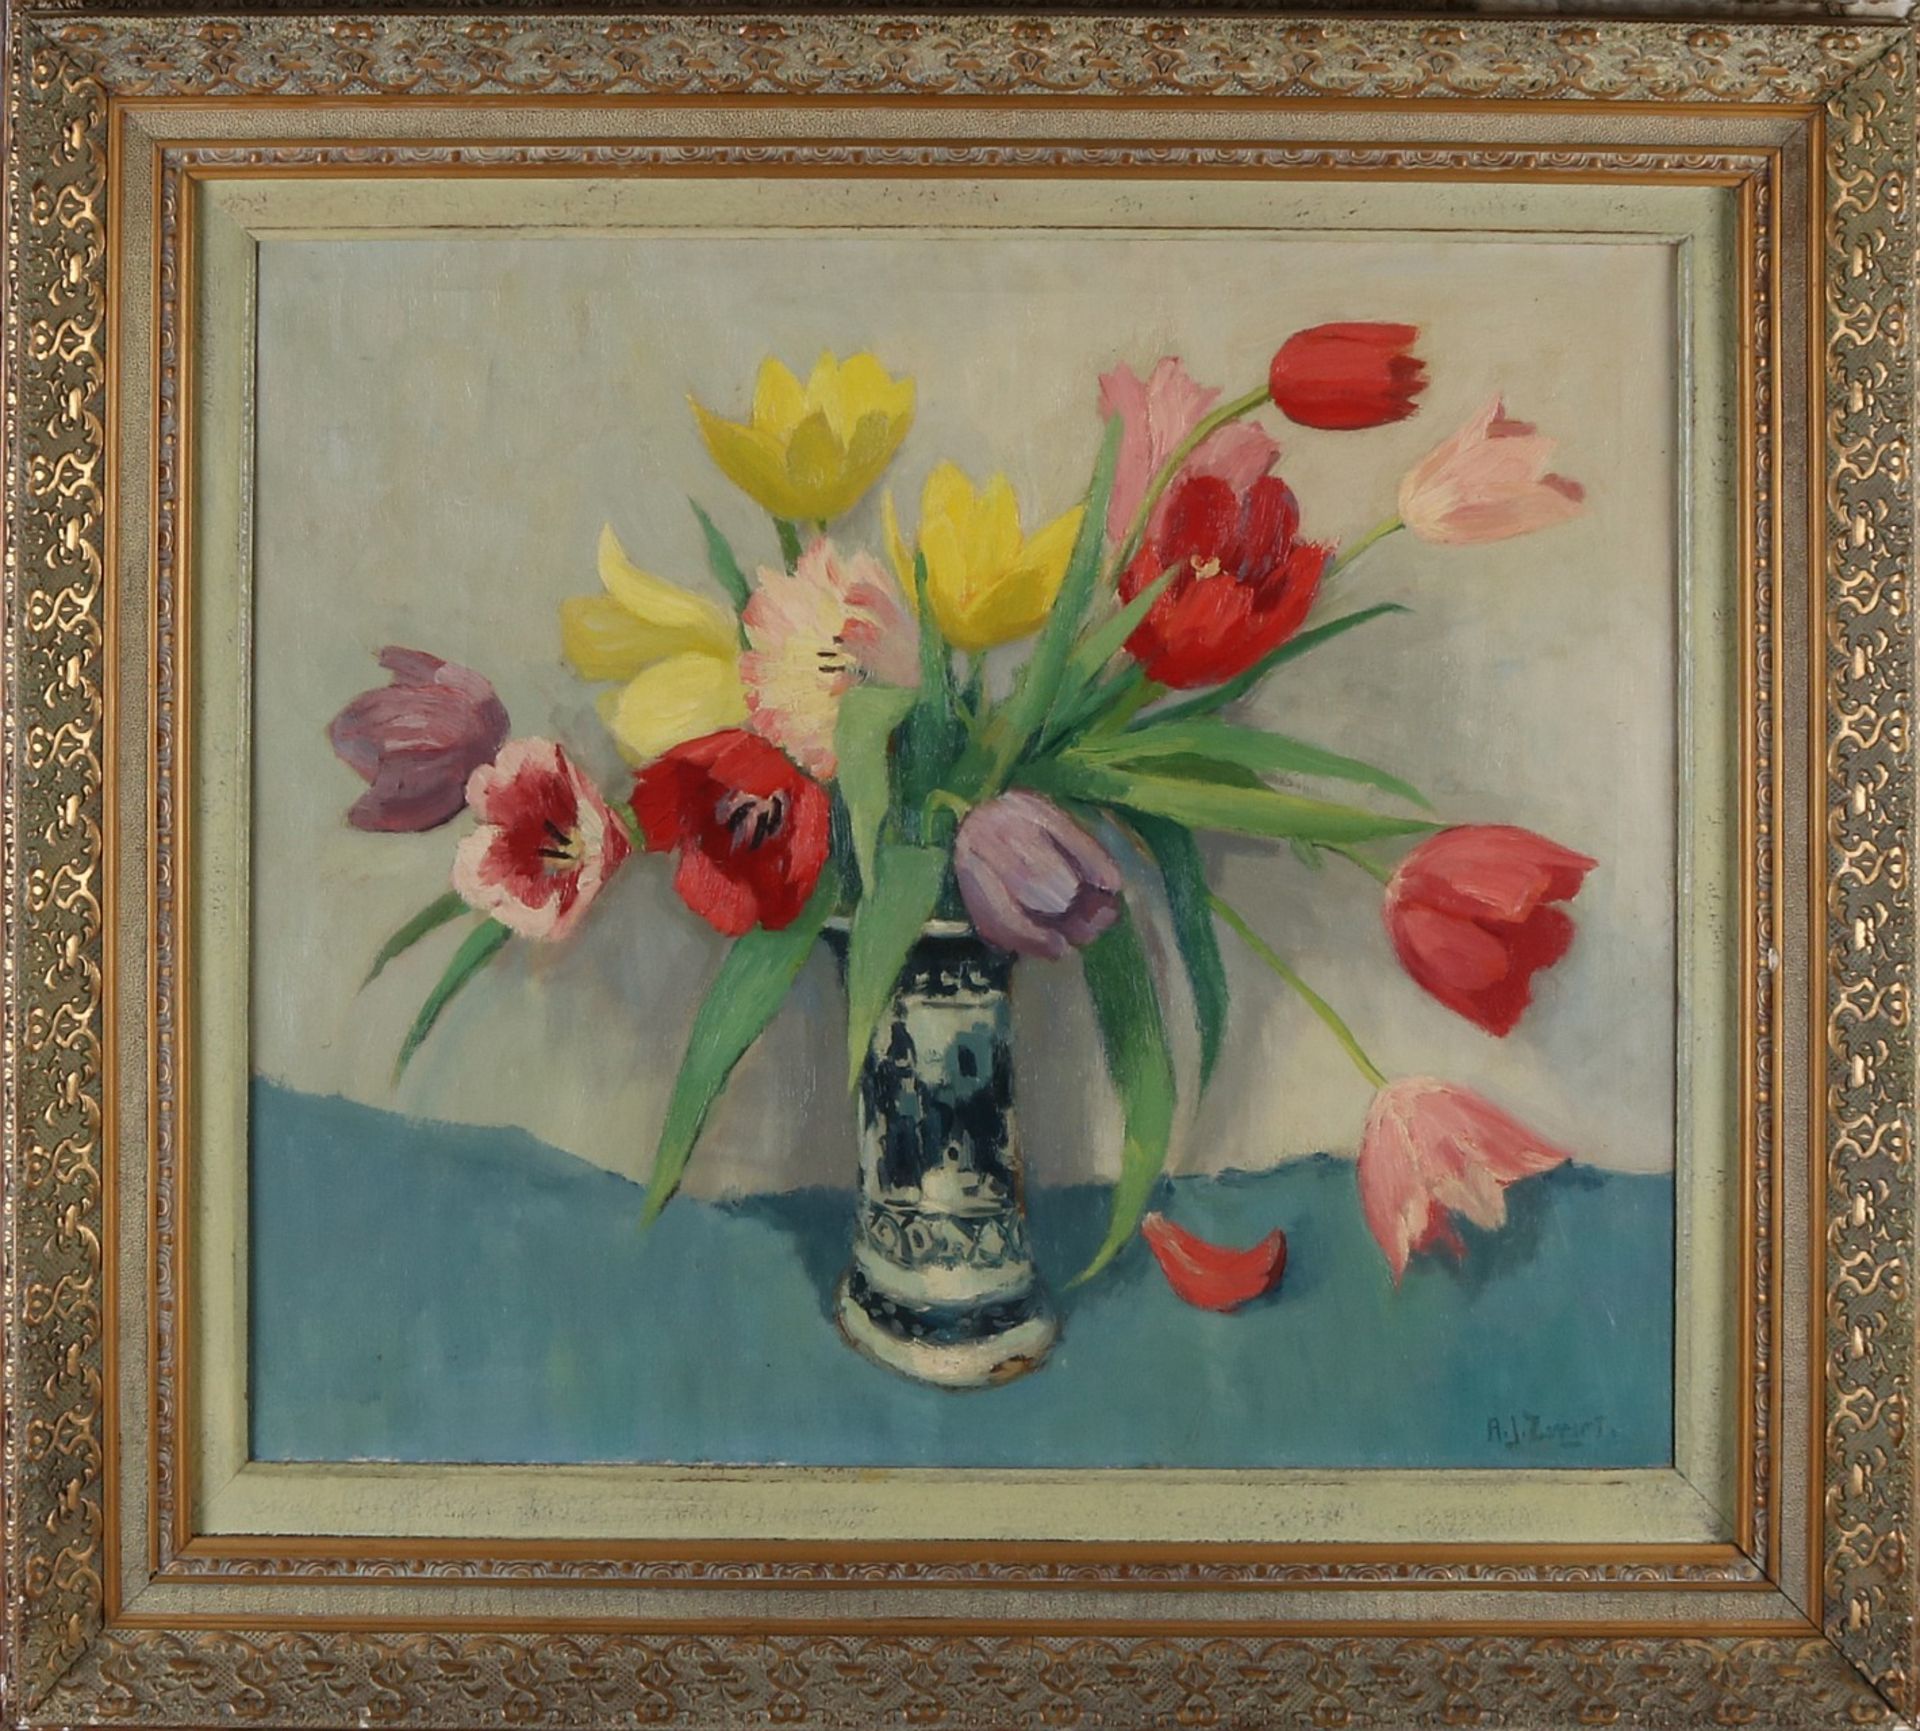 Adrianus Johannes Black. 1903 - 1981. Delfter Vase mit Tulpen. Öl auf Leinen. Abmessungen: H 60